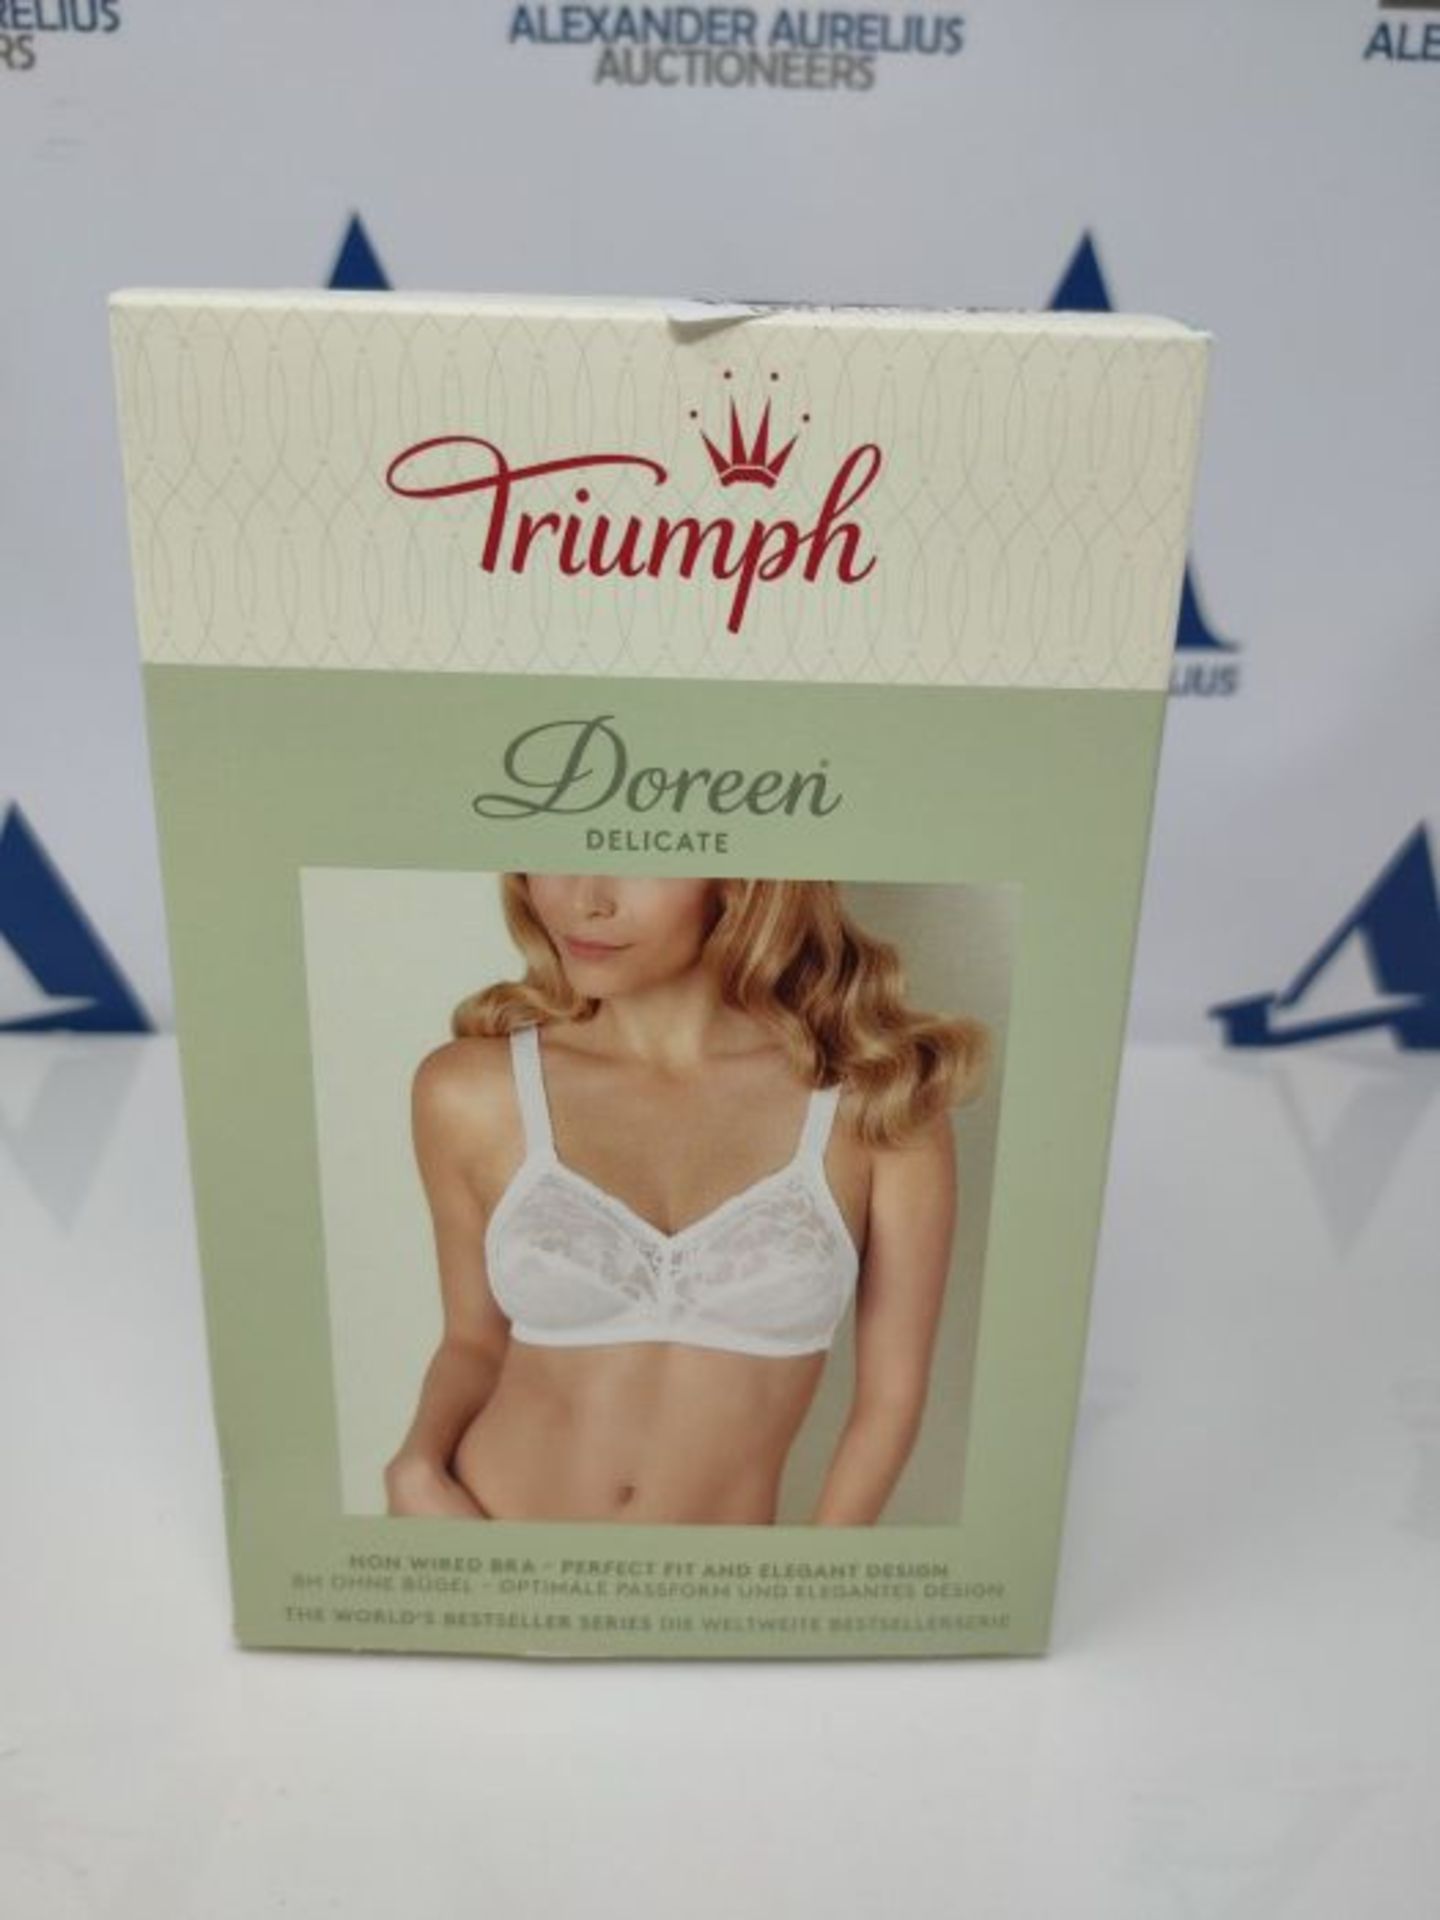 Triumph Women's Delicate Doreen N Non-Wired Bra, White, 40C - Image 2 of 3